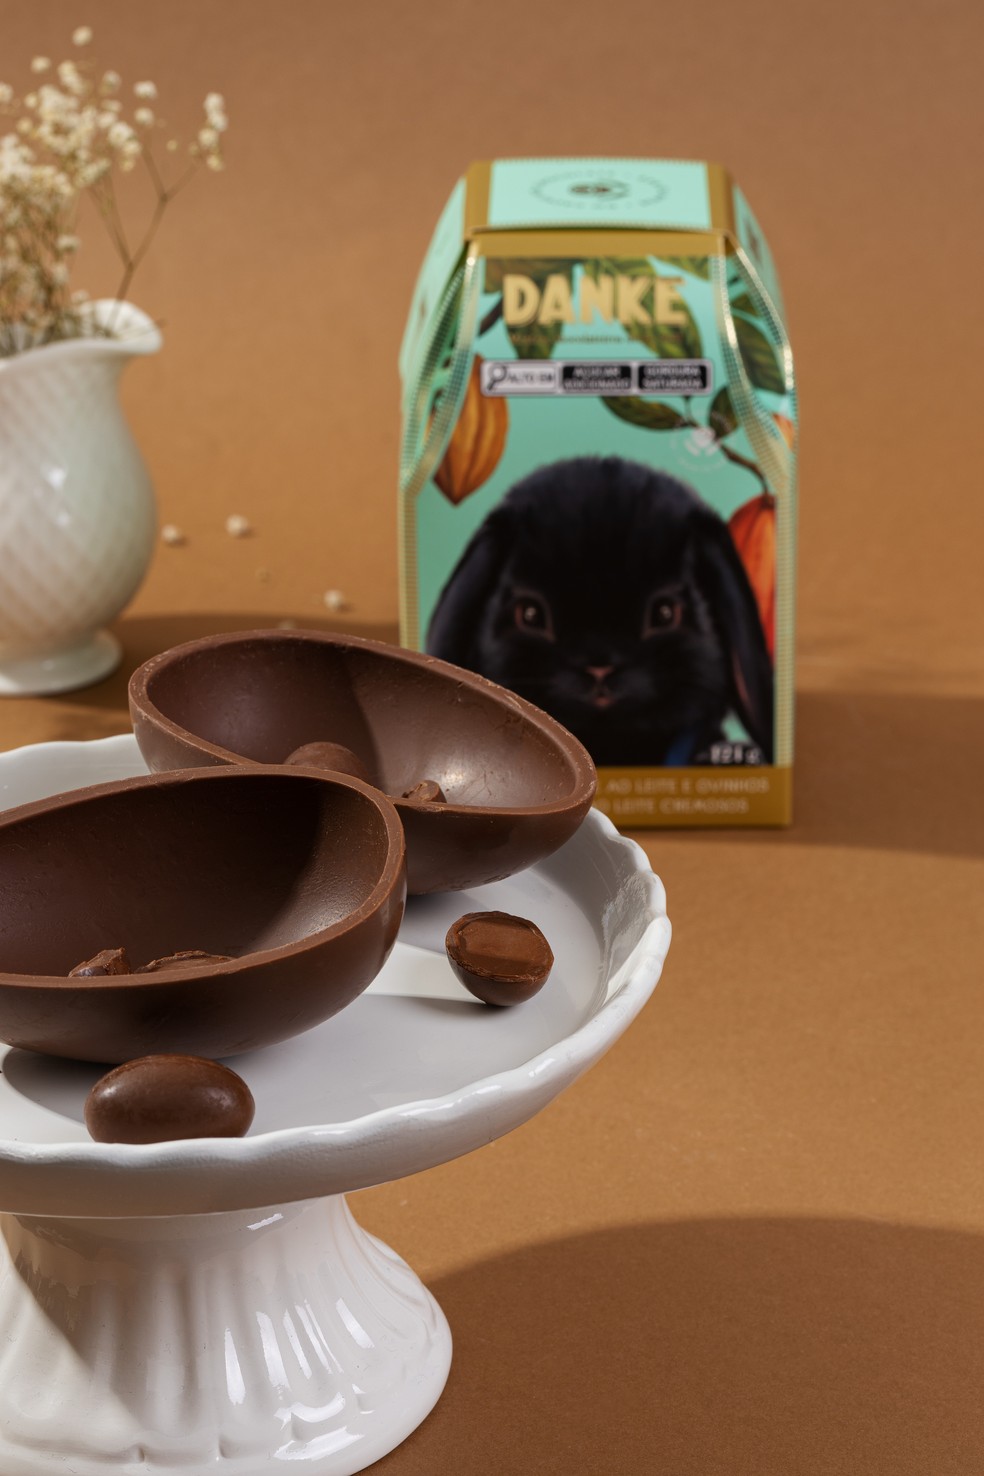 Danke | Ovo de chocolate ao leite, acrescido de mini ovinhos (124 g). R$ 39,90  — Foto: Divulgação